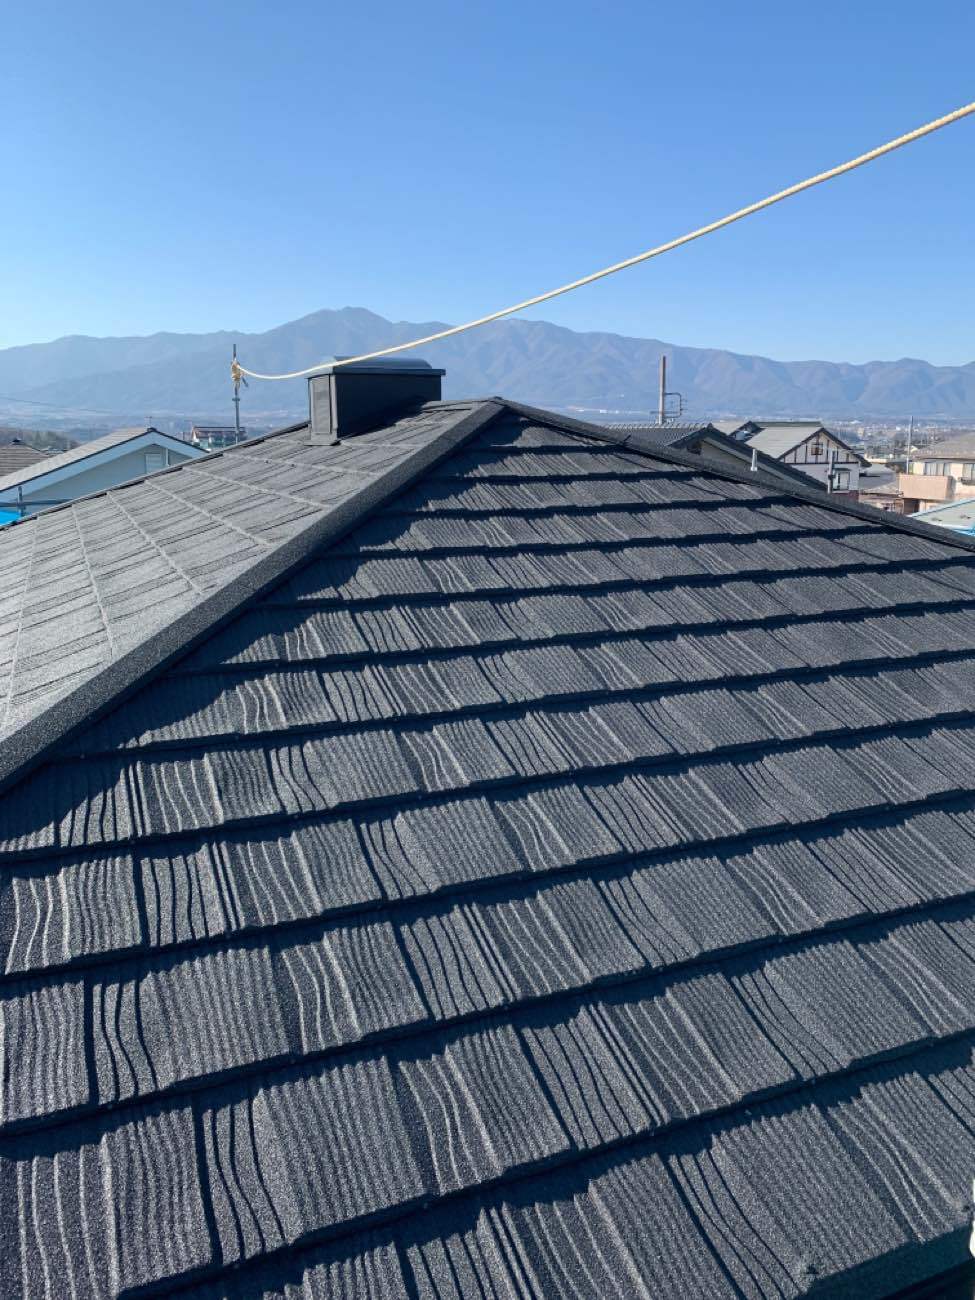 長野県伊那市で屋根をLIXILのTルーフで葺き替えリフォームを行いました。